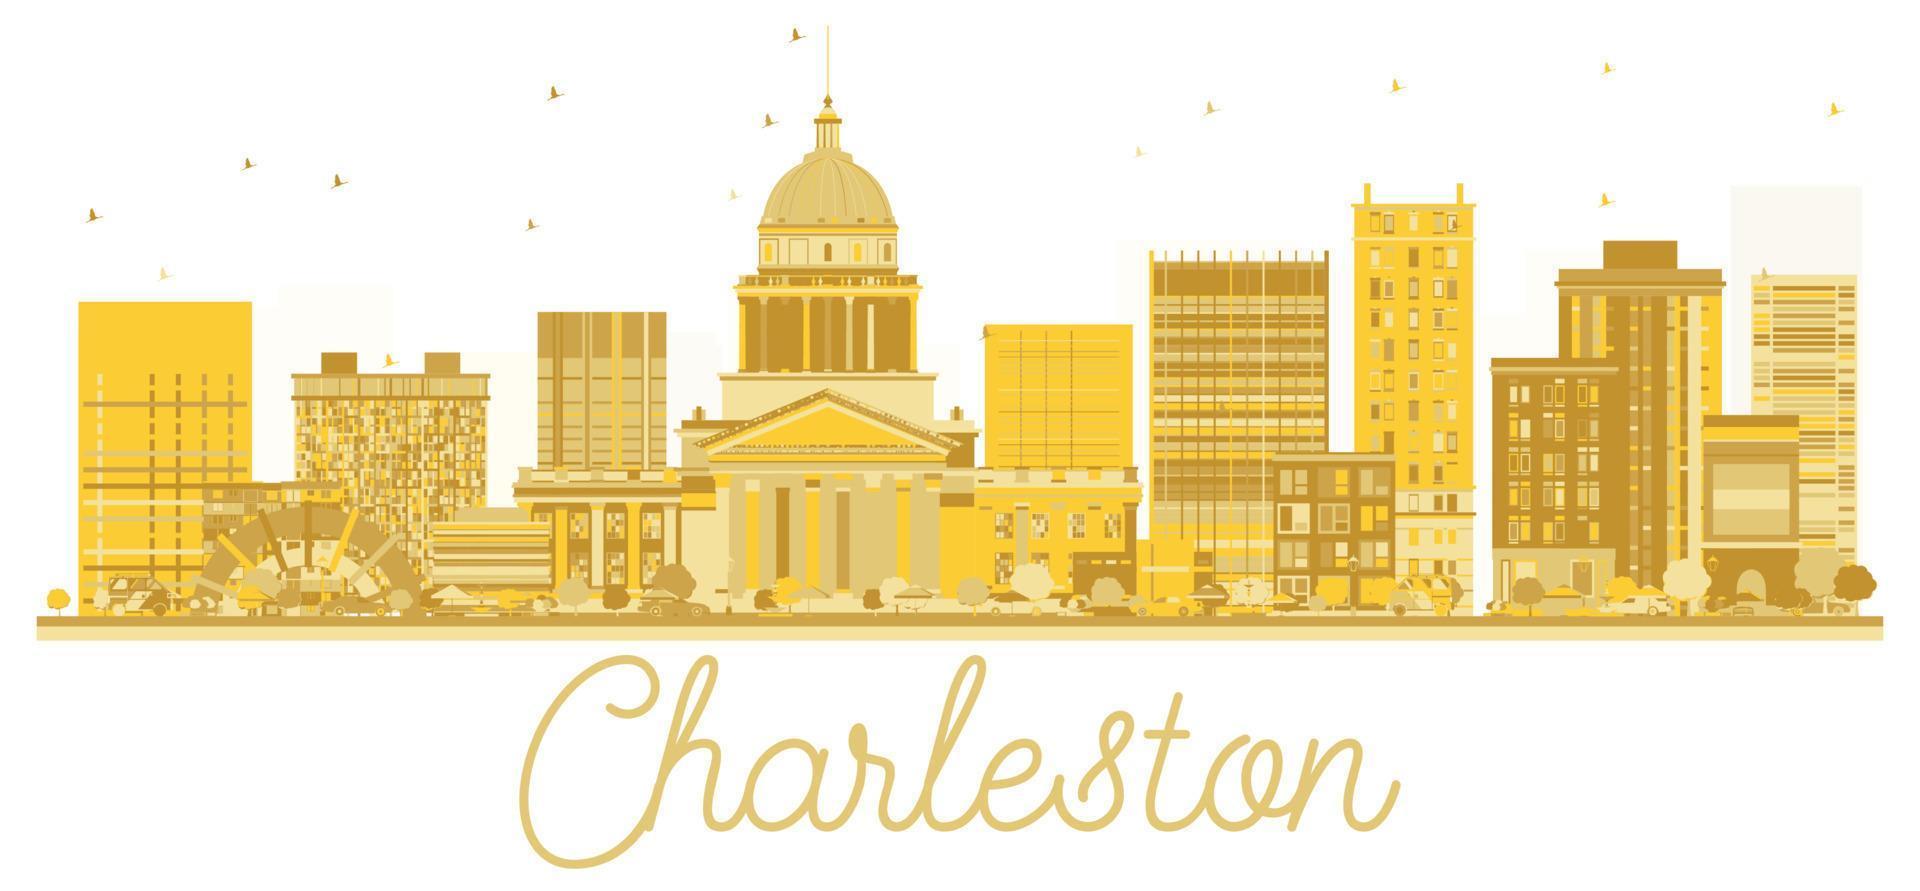 Charleston ovest Virginia Stati Uniti d'America città orizzonte d'oro silhouette. vettore